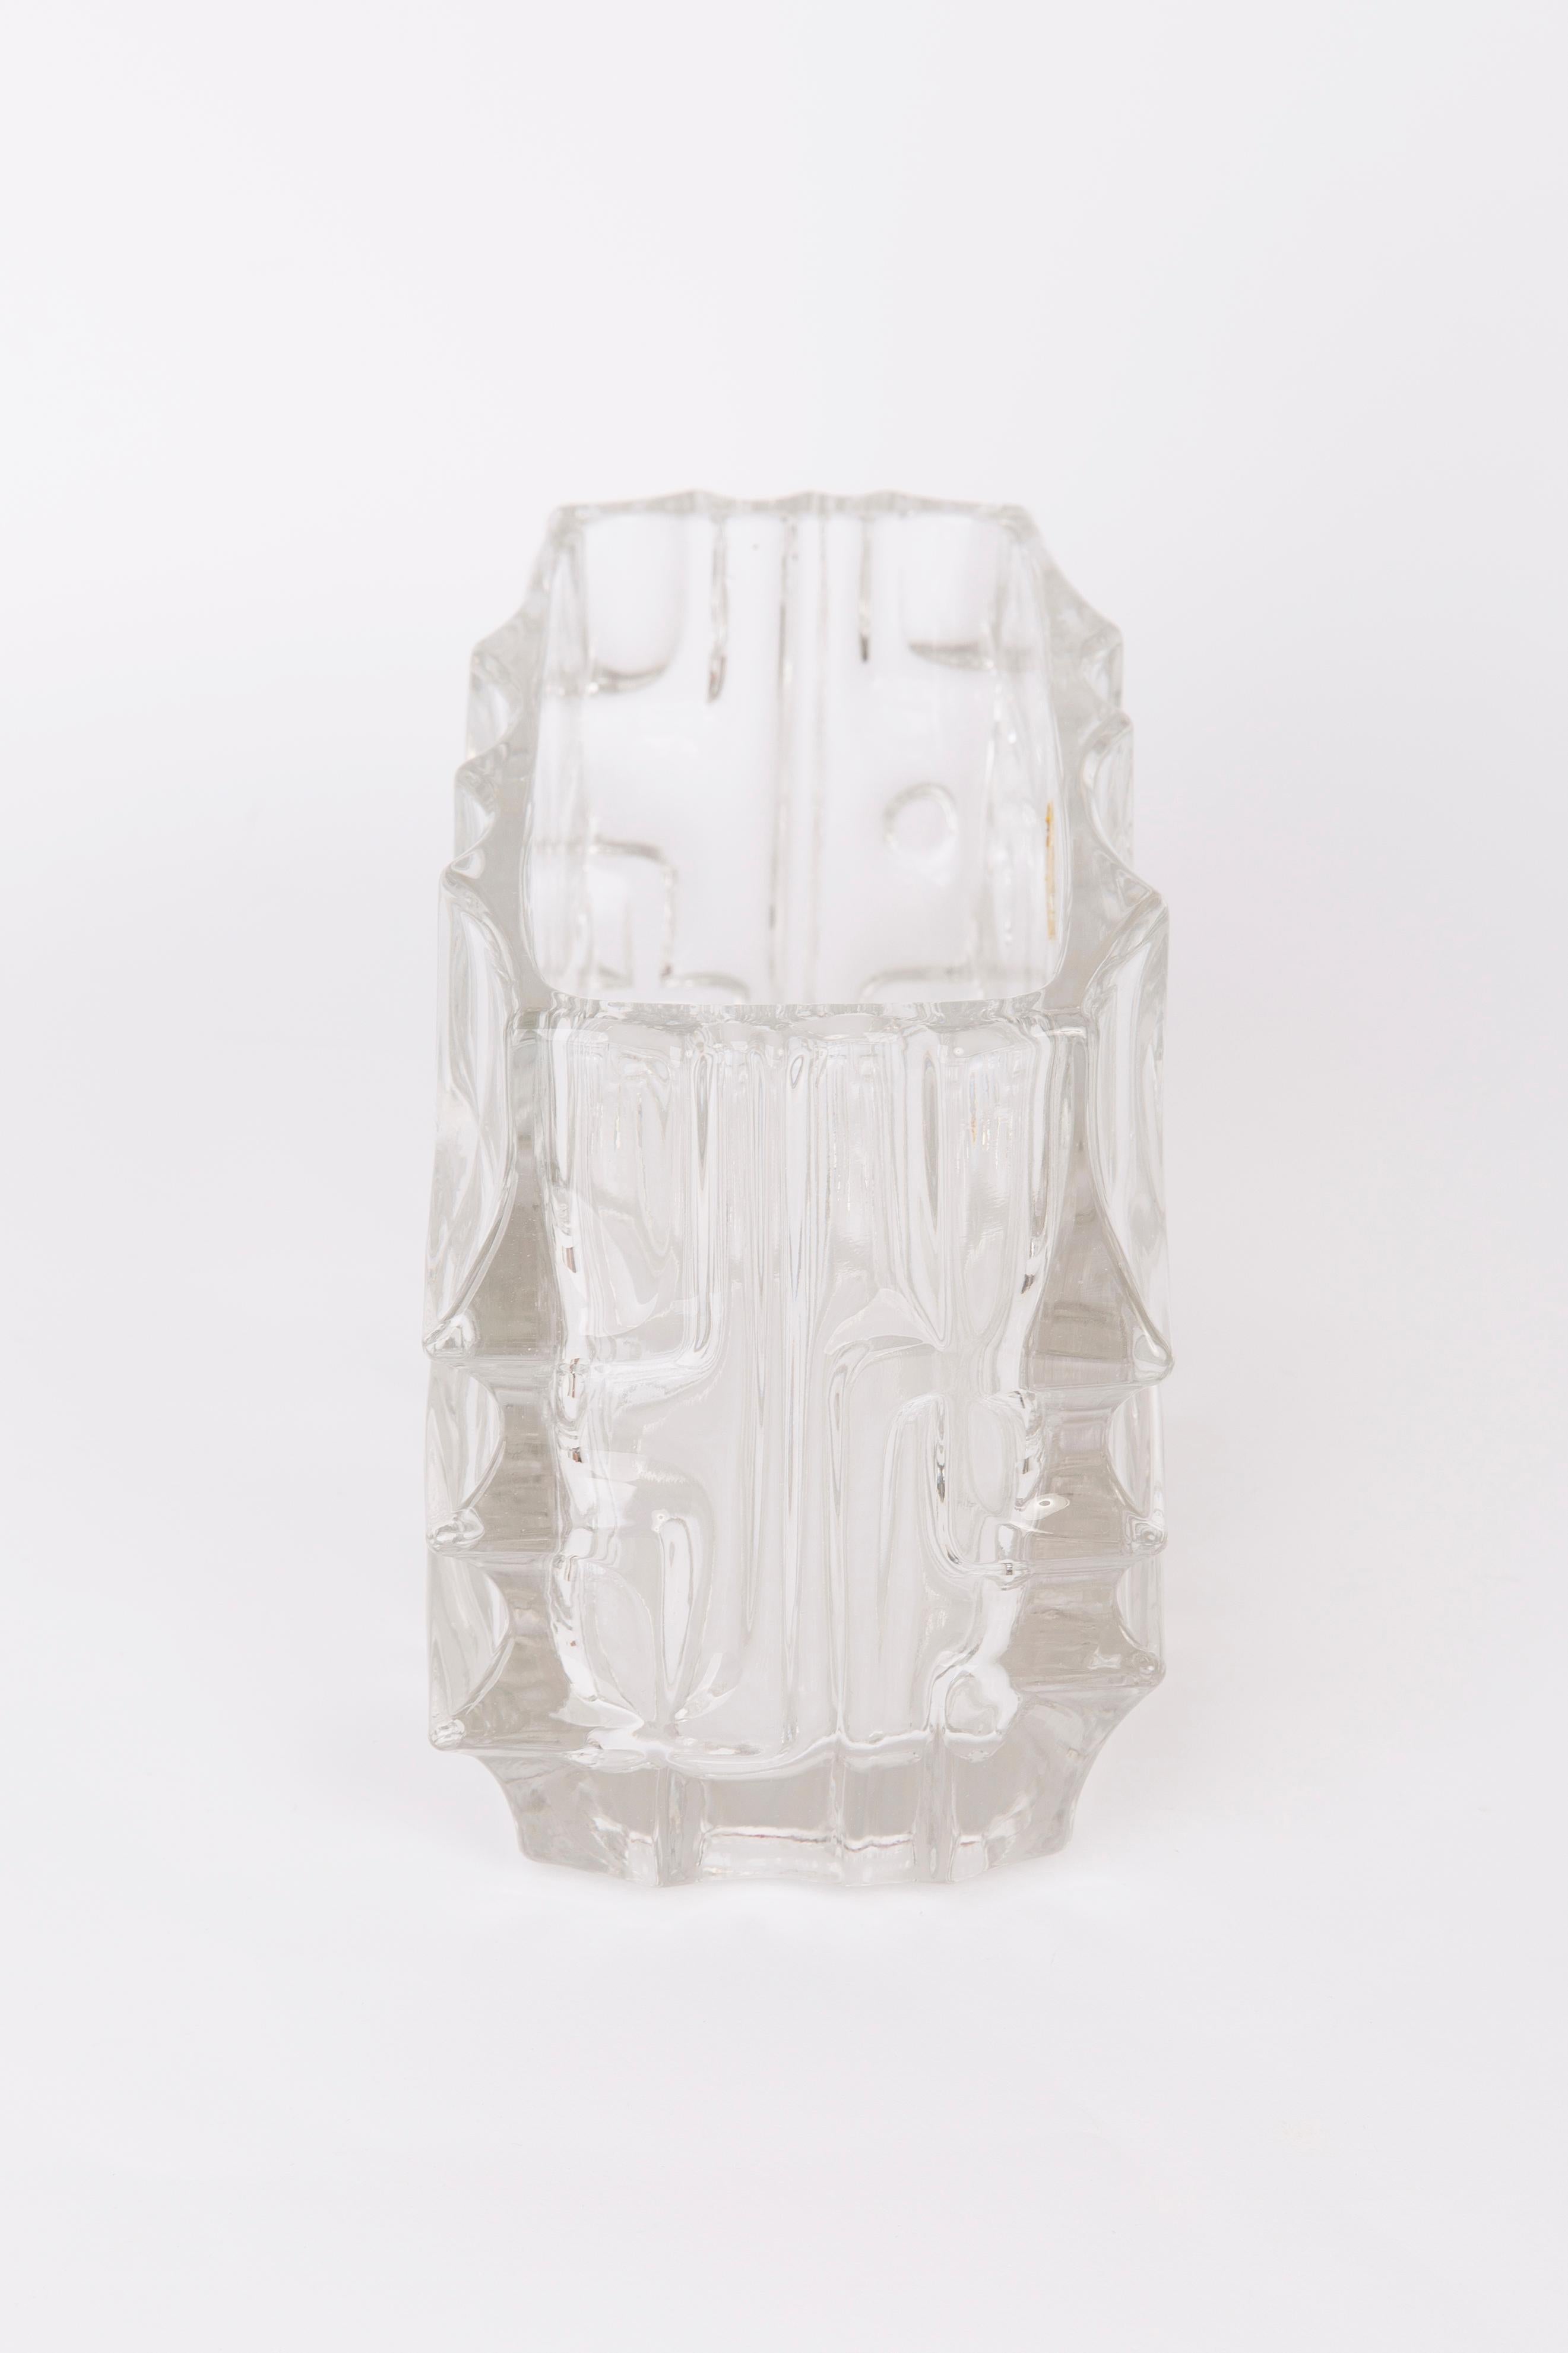 Glass White Vase by Vladislav Urban for Sklo Union, 20th Century, Europe, 1960s For Sale